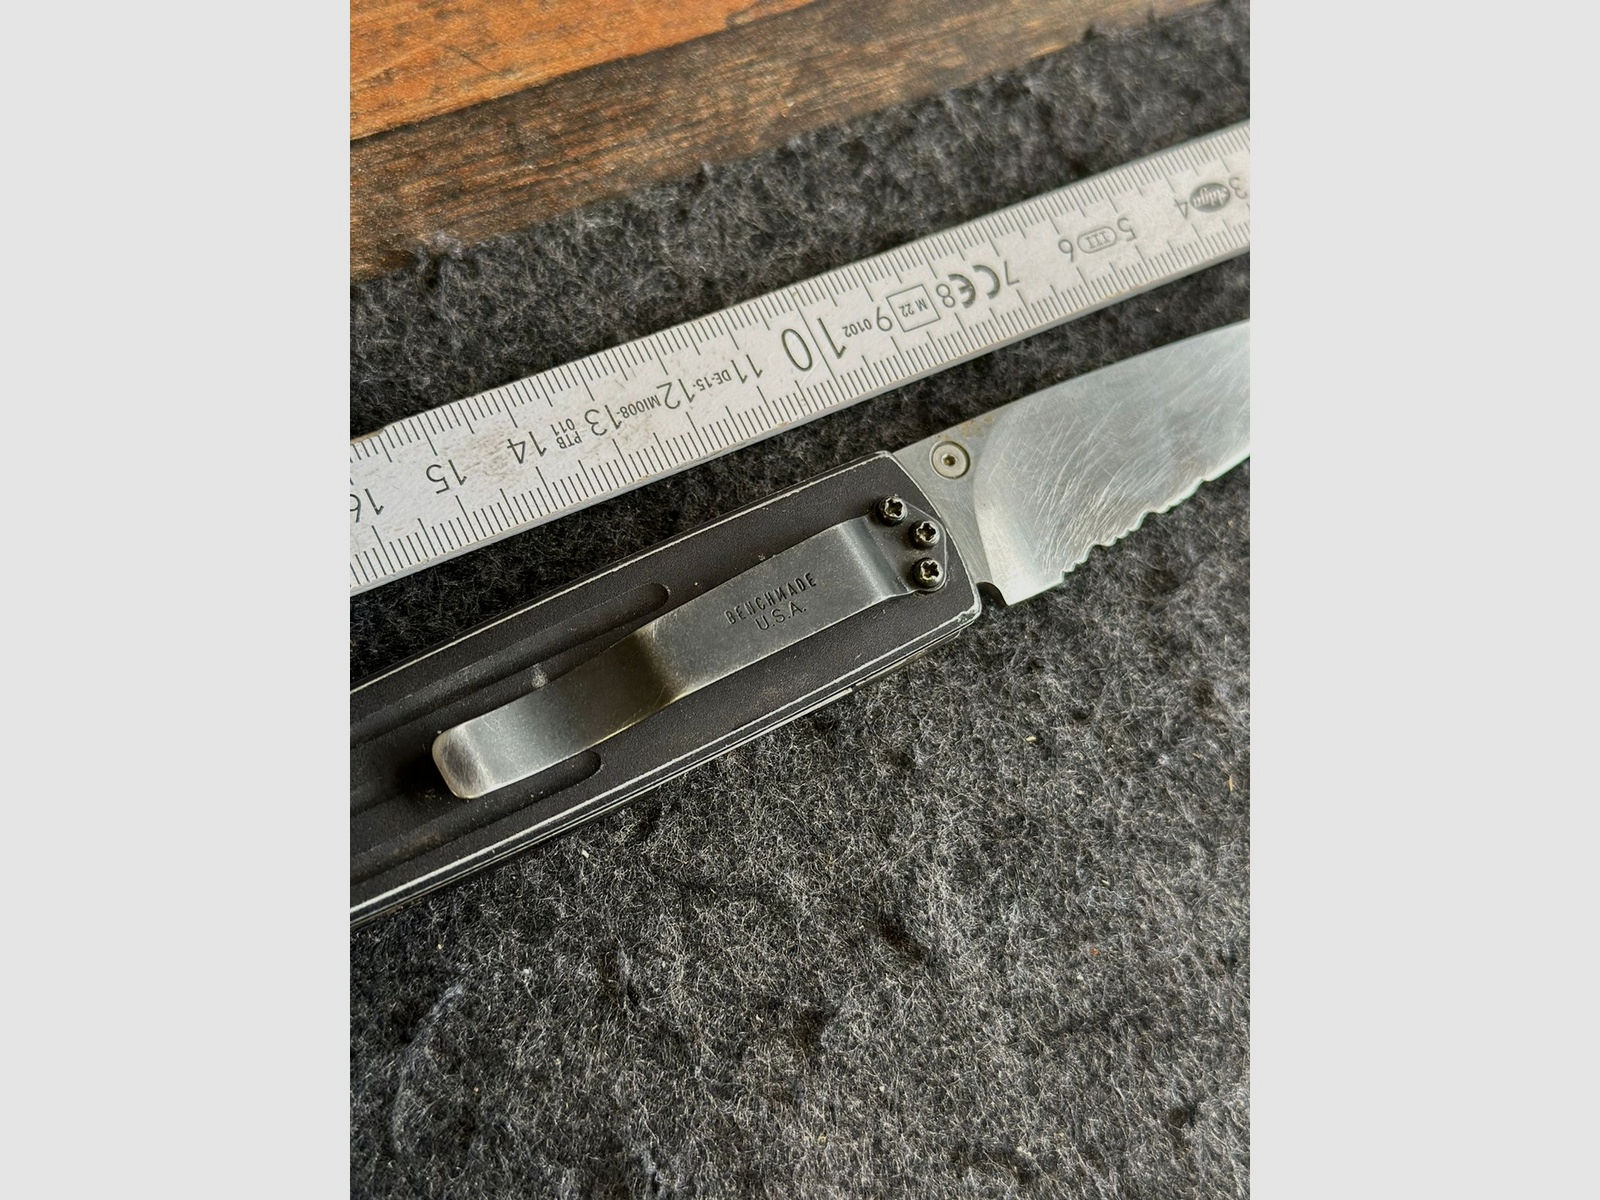 Altes Benchmade USA Messer, Klappmesser